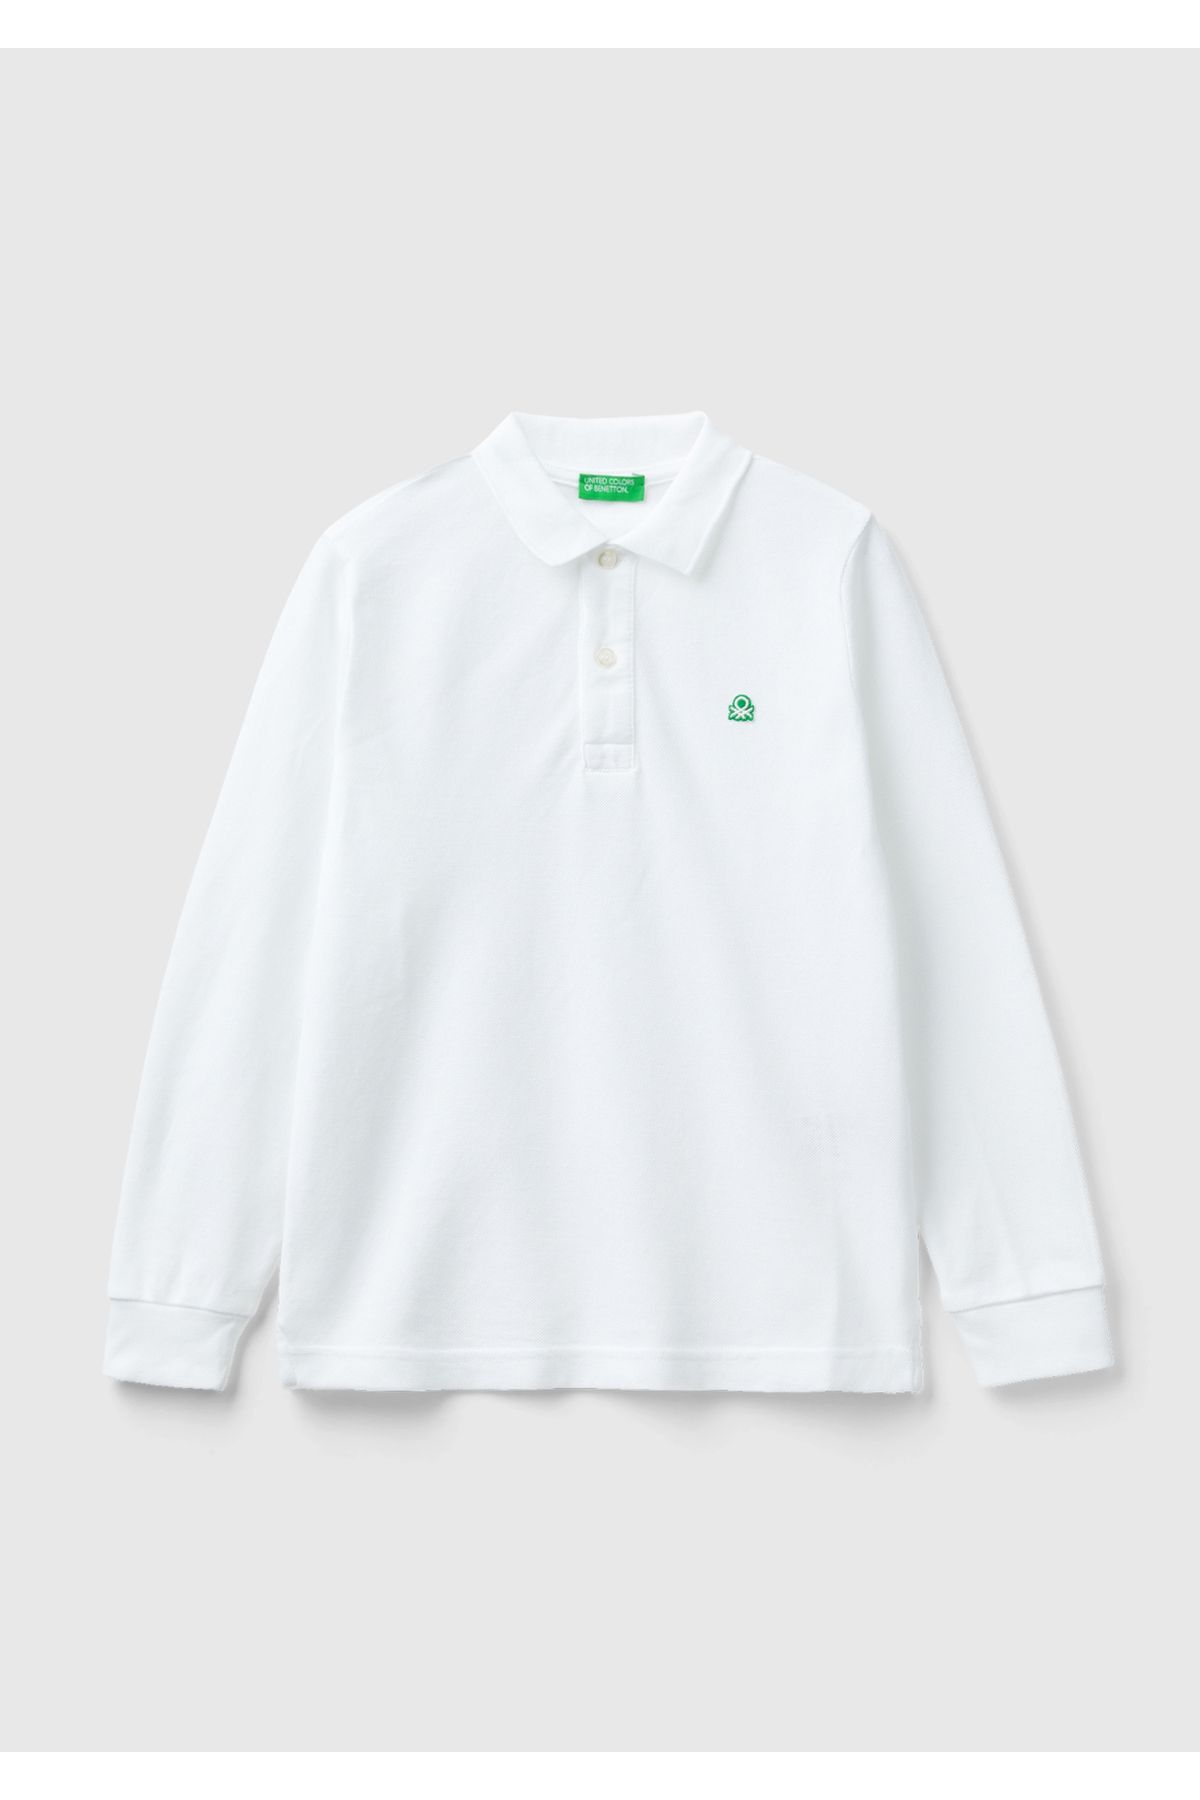 United Colors of Benetton Erkek Çocuk Beyaz Logolu Polo T-Shirt